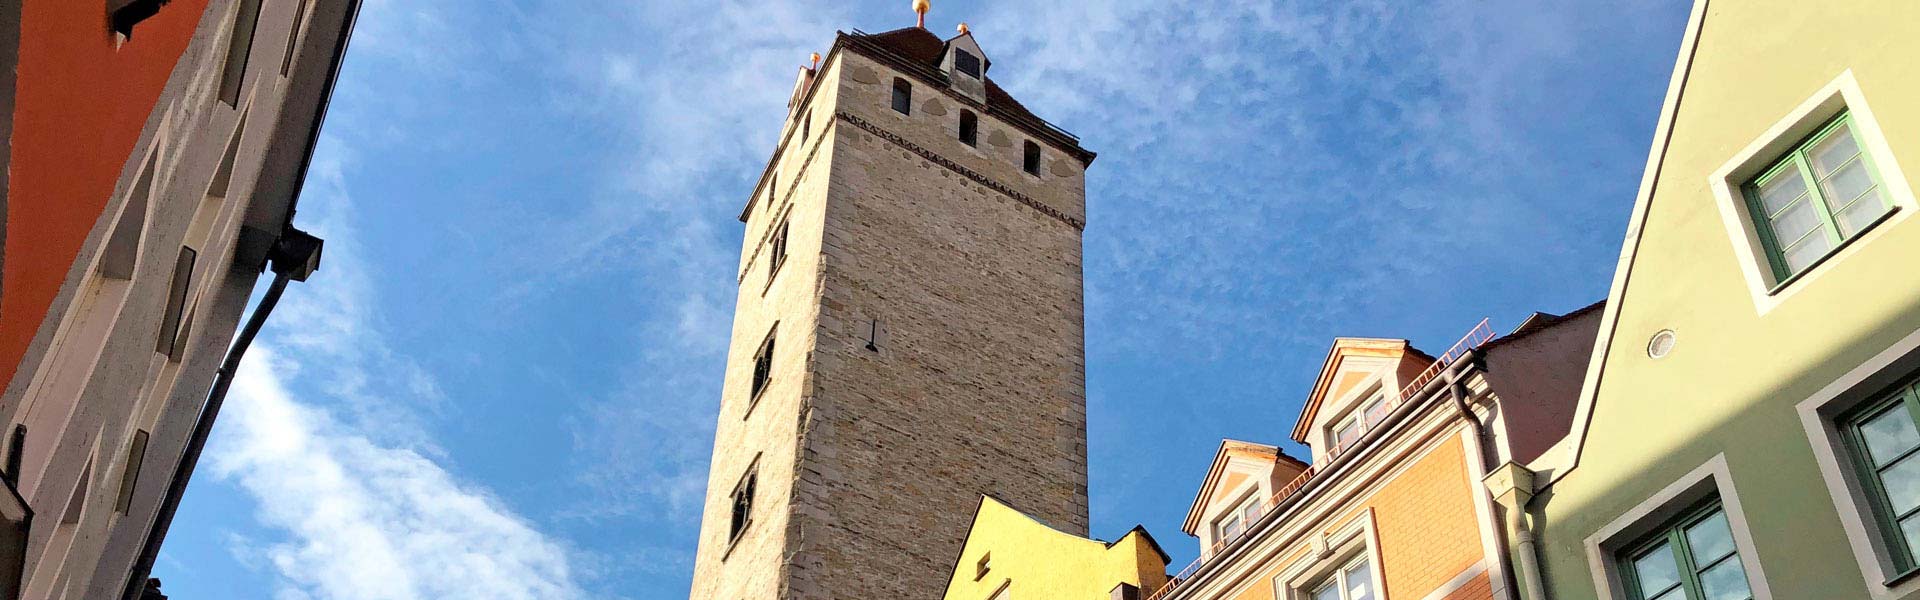 Goldener Turm Wahlenstraße